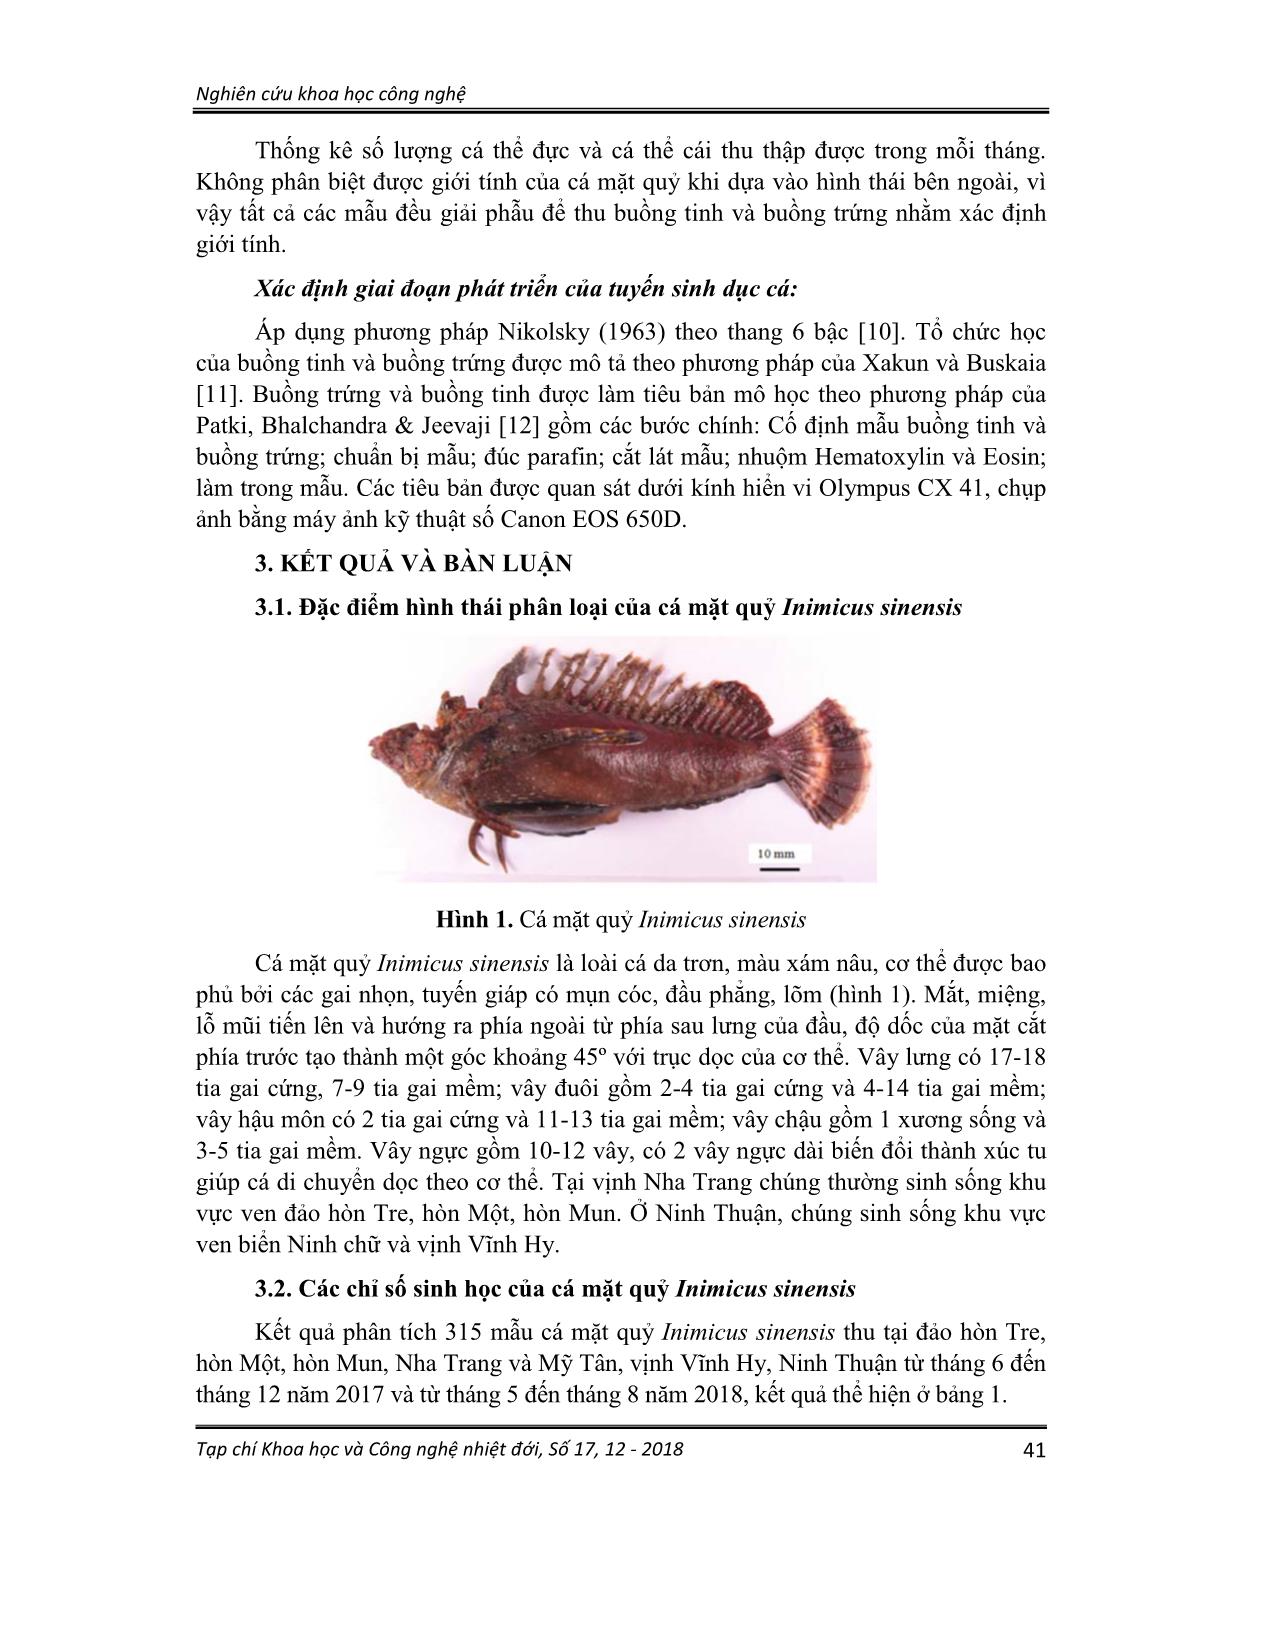 Một số đặc điểm sinh học, sinh sản cá mặt quỷ (inimicus sinensis, valenciennes 1833) thu được ở Khánh hòa và Ninh Thuận trang 3